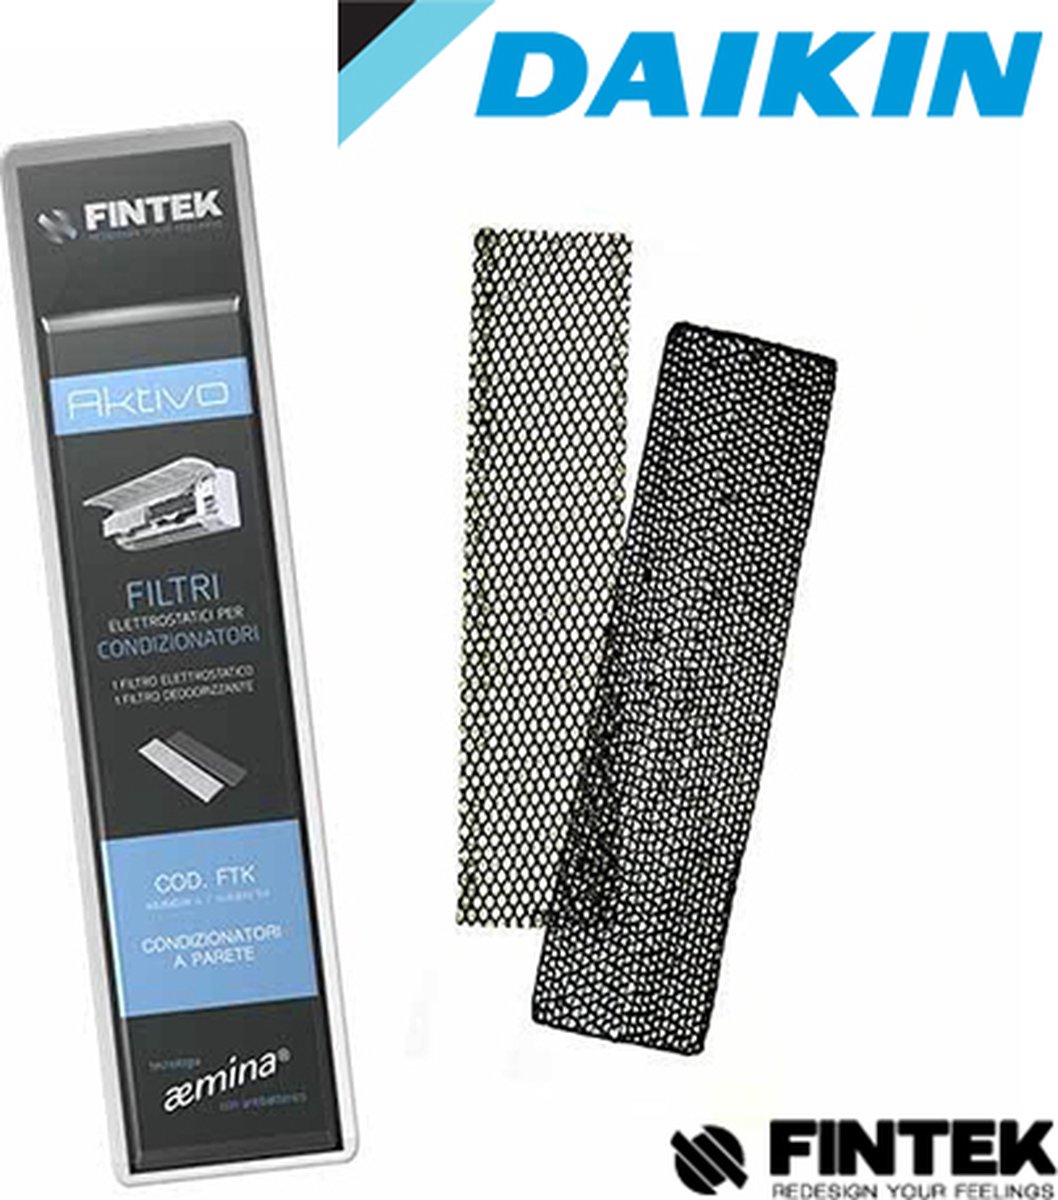 Filtre Fintek aktivo FA50 pour climatiseurs Daikin , meilleurs que  l'original sont ces... | bol.com